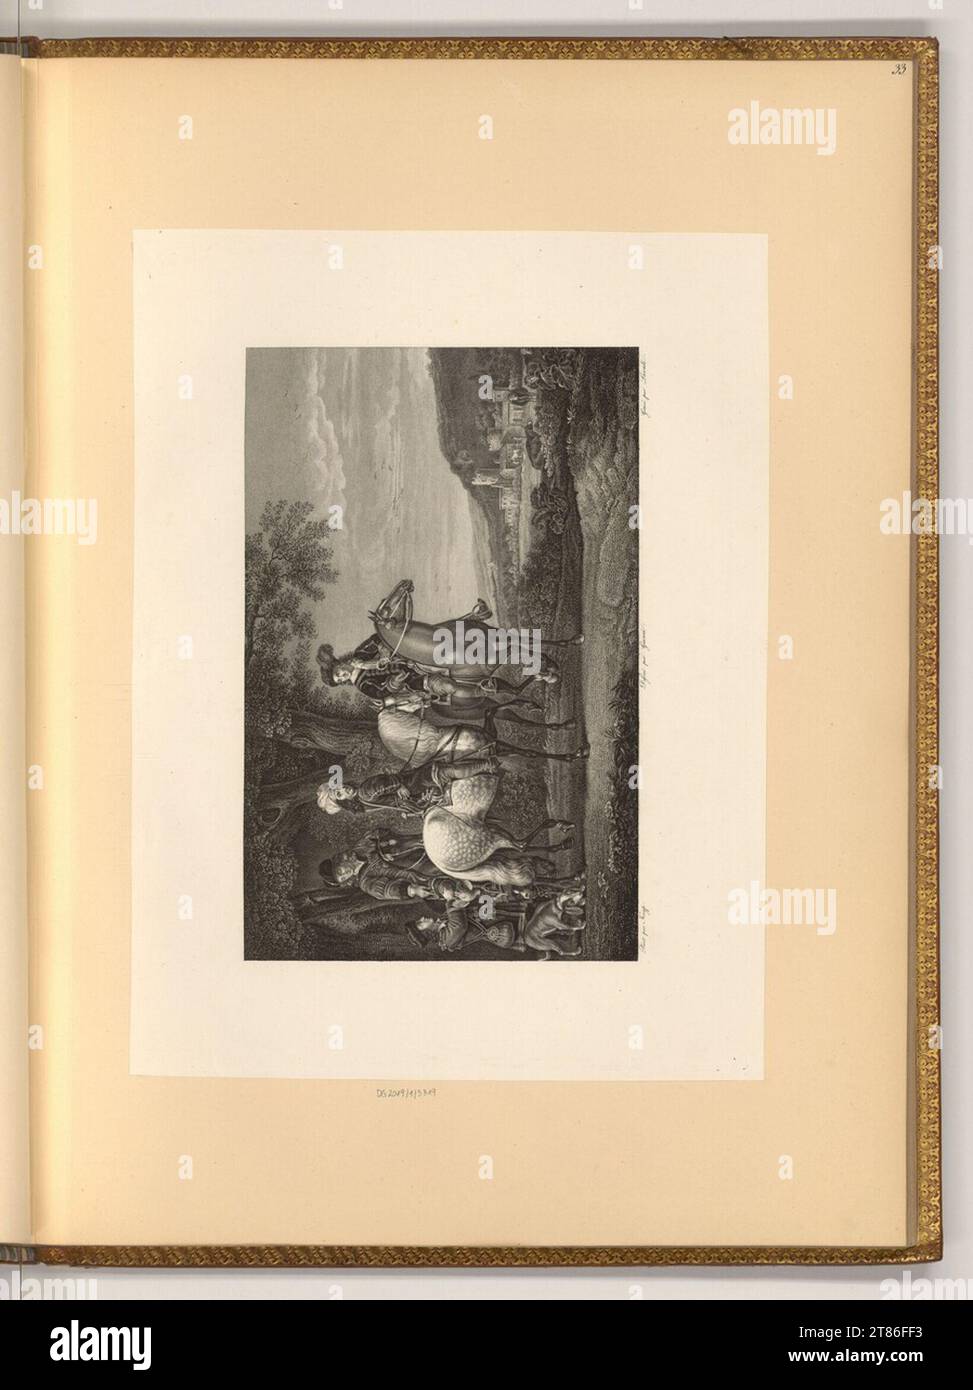 Jacques Lavallée (graveur) trois coureurs. Gravure, gravure sur cuivre 1800-1805, 1800/1805 Banque D'Images